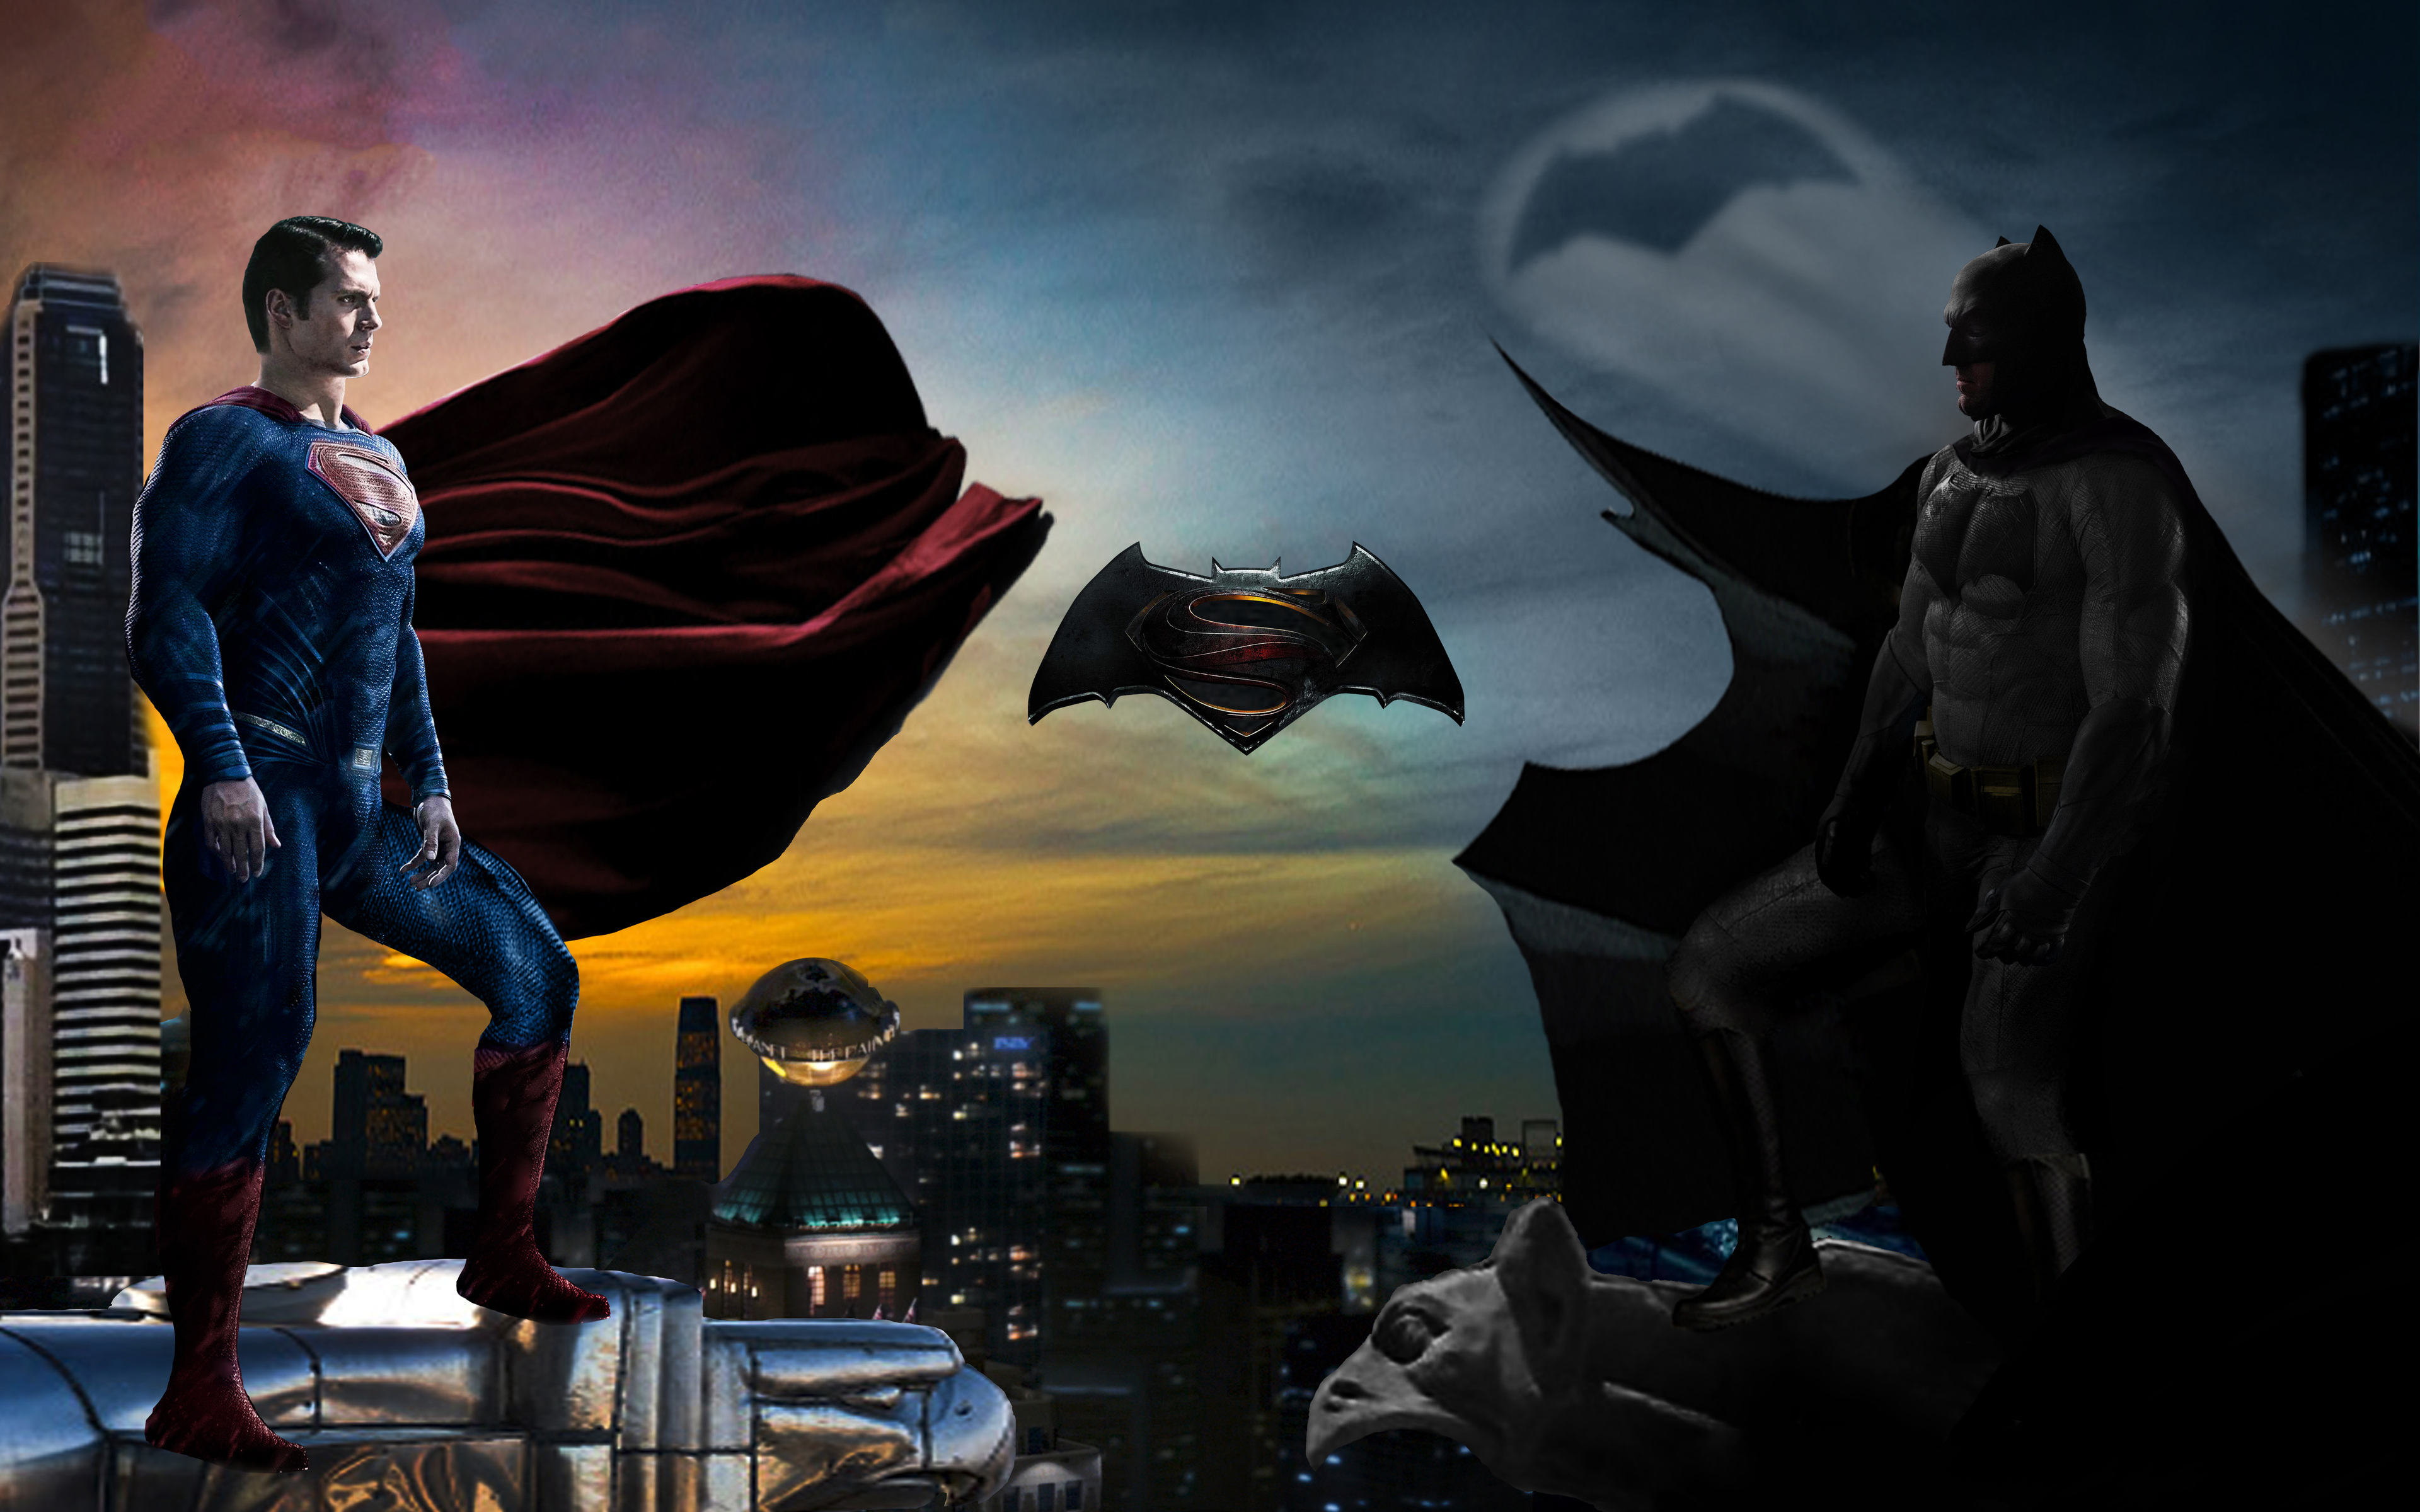 ダウンロード画像 嵐 4k バットマンvsスーパーマン 美術 戦い バットマン スーパーマン 画面の解像度 3840x2400 壁紙 デスクトップ上